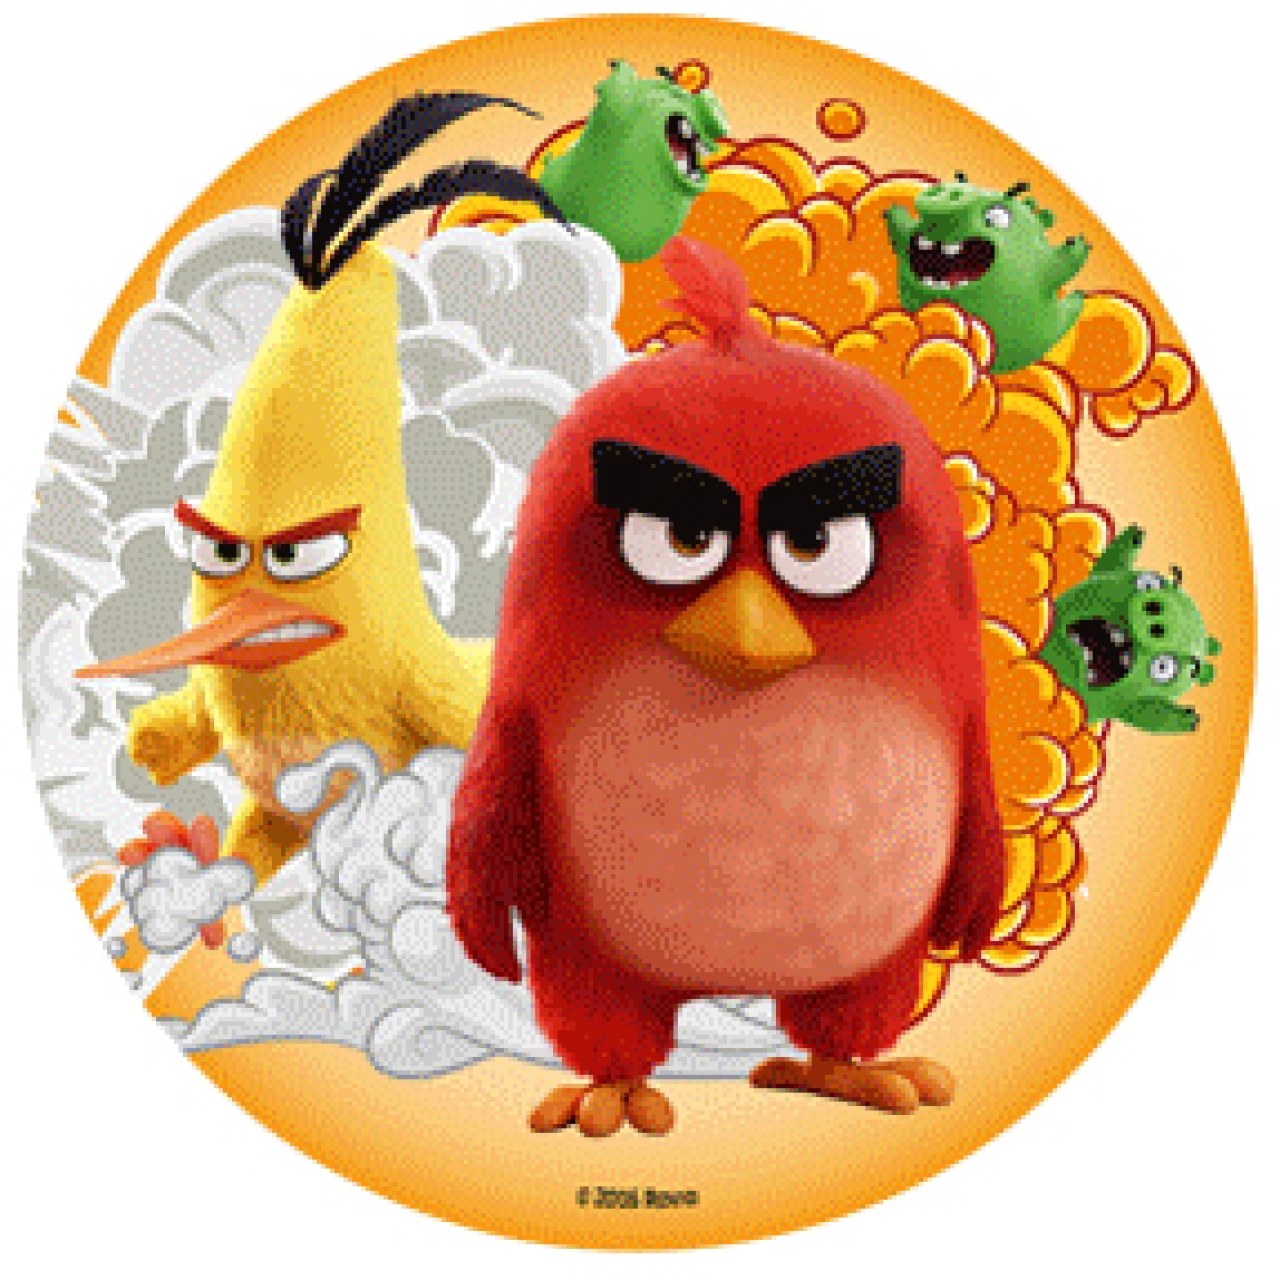 Tortenaufleger "Angry Birds" aus Oblatenpapier, Red und Chuck, 21 cm